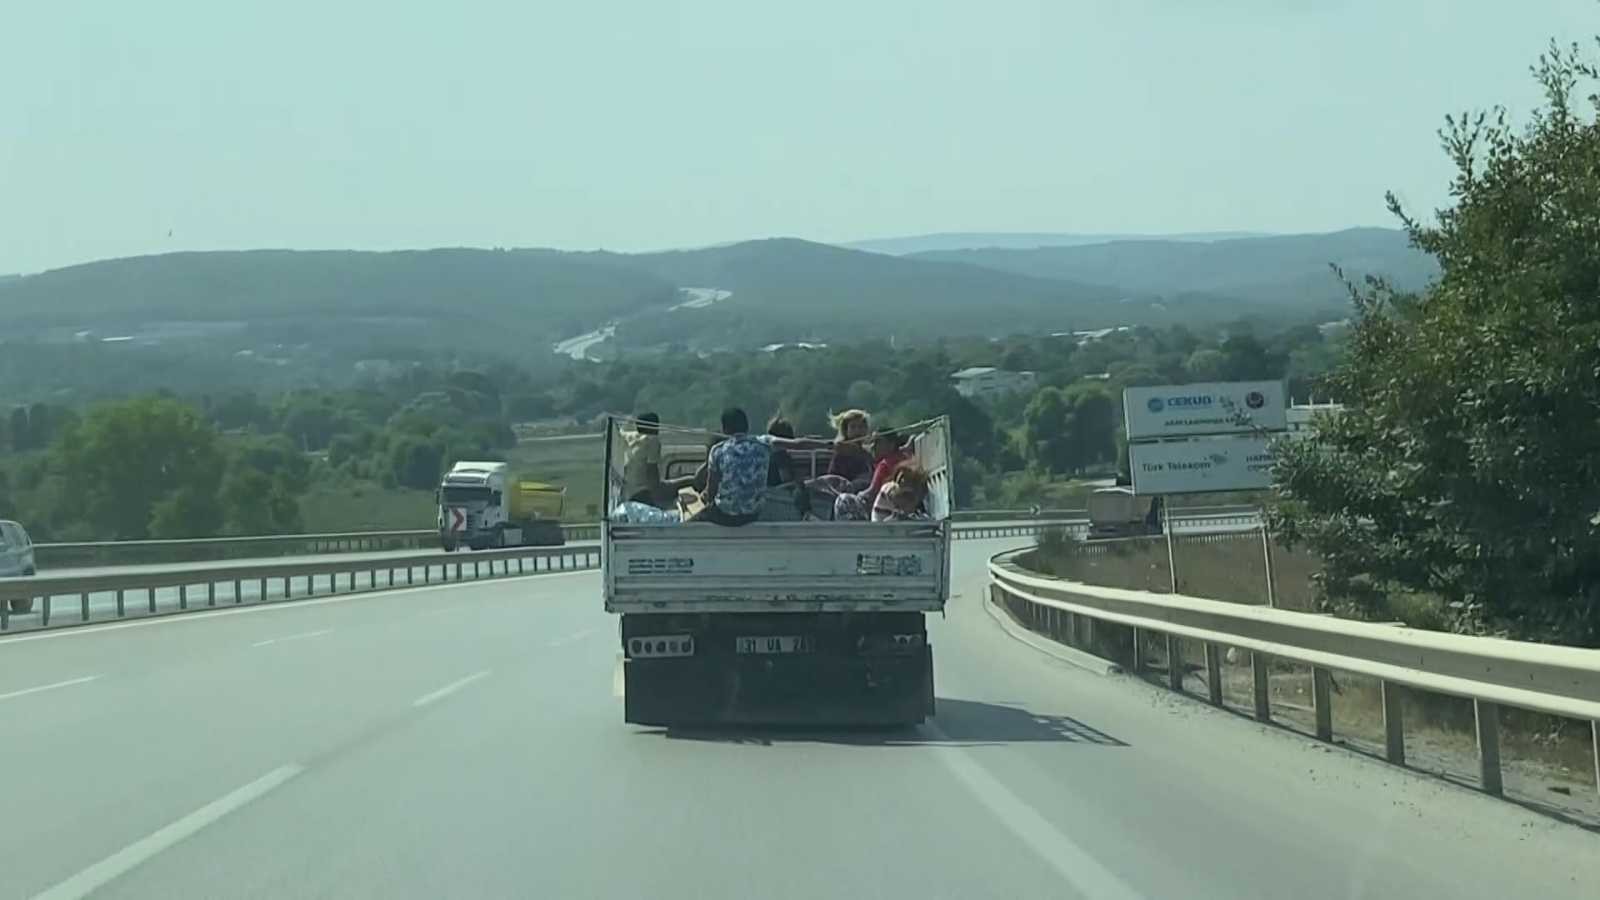 (Özel) Şile’de kamyonet kasasında 8 kişinin tehlikeli yolculuğu kamerada #istanbul